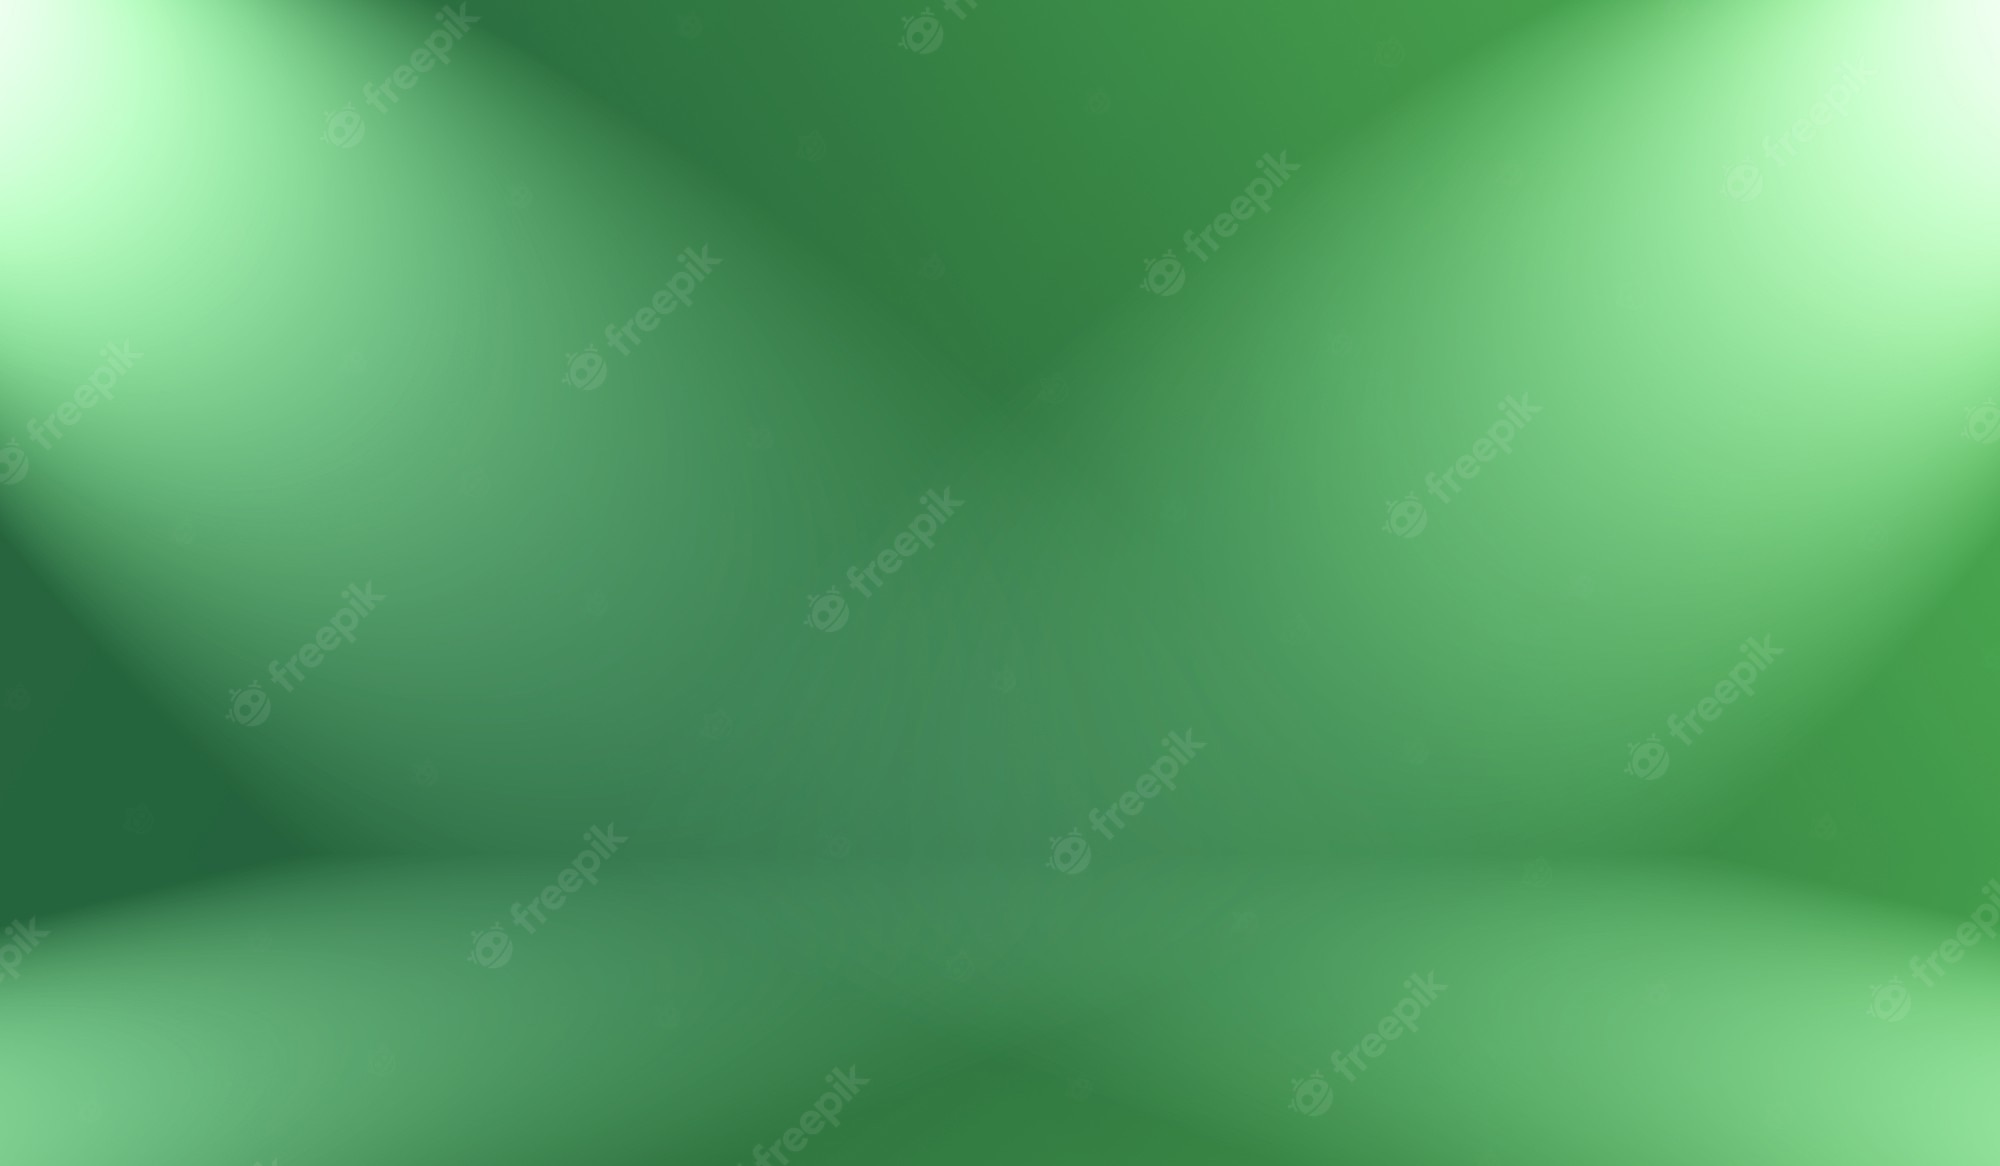 Dark Green Gradient Background Image